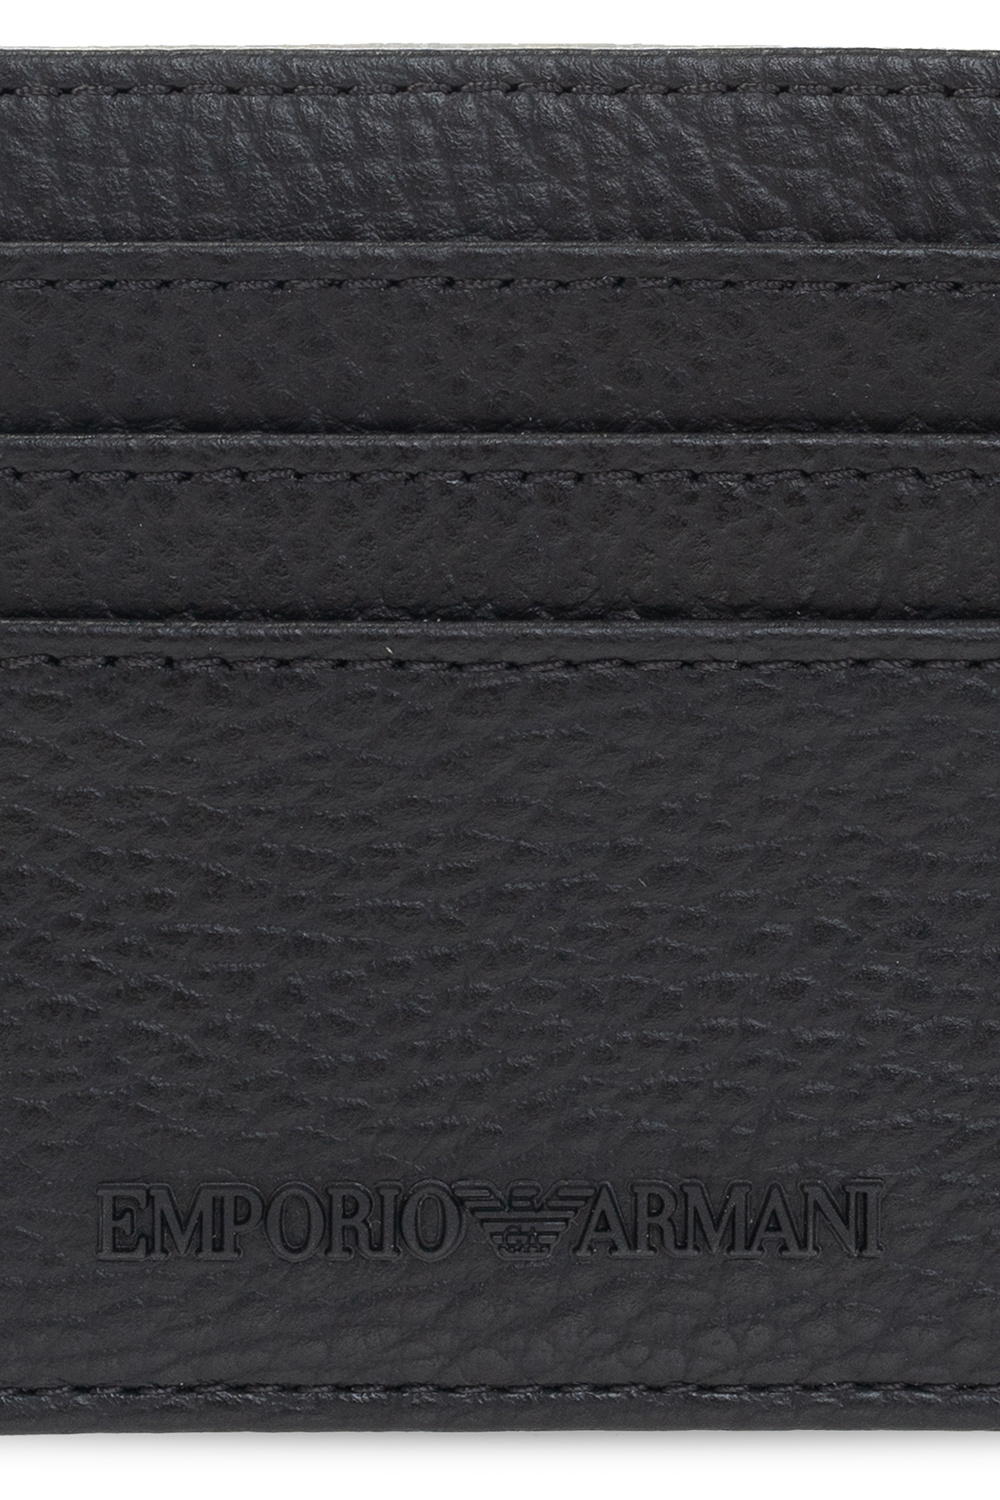 Emporio Armani EMPORIO ARMANI 3 Pack Stretch Cotton Trunks